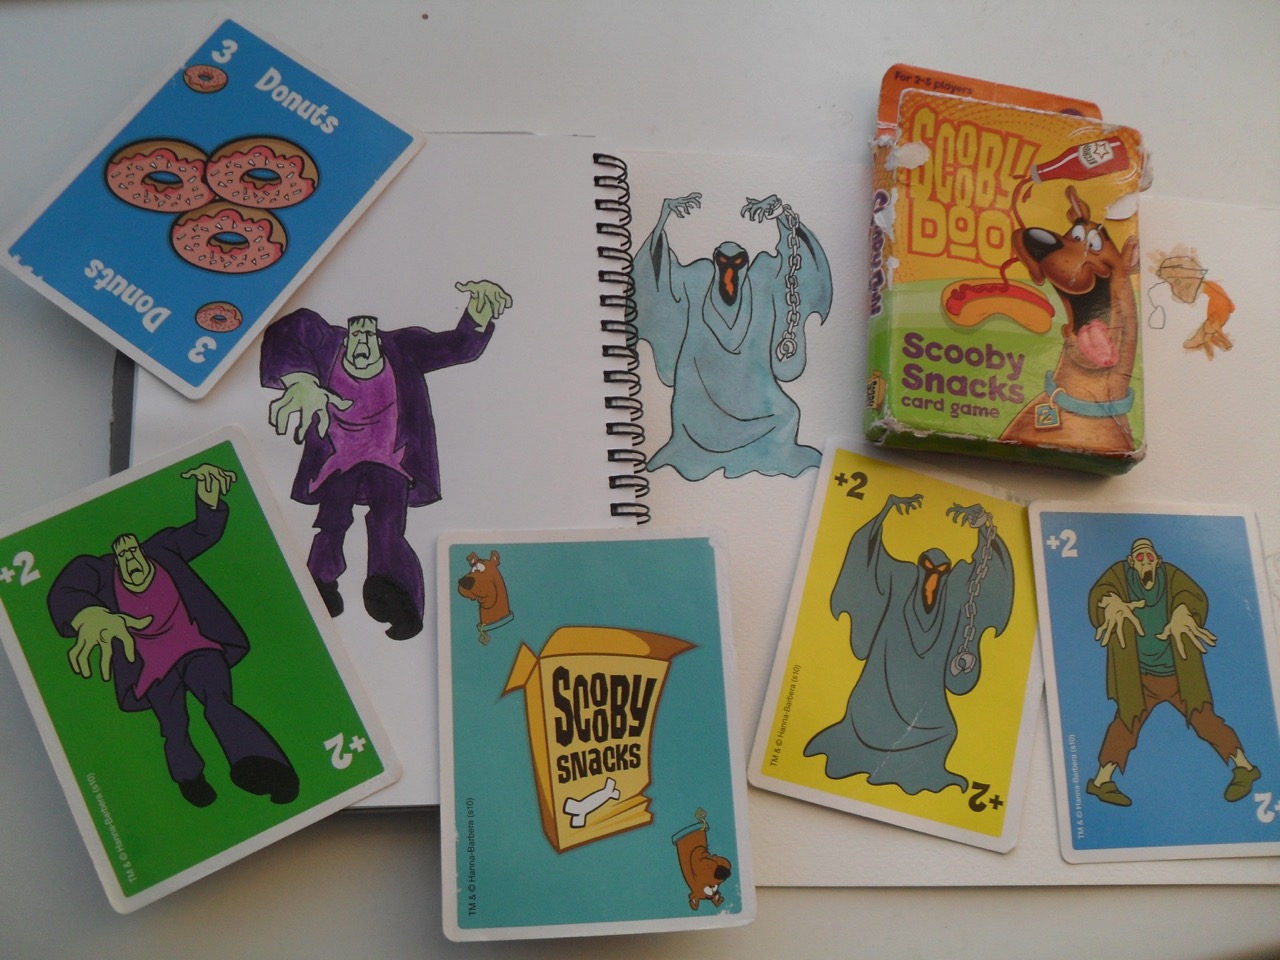 Scooby Snacks card game, photo by Marija Smits